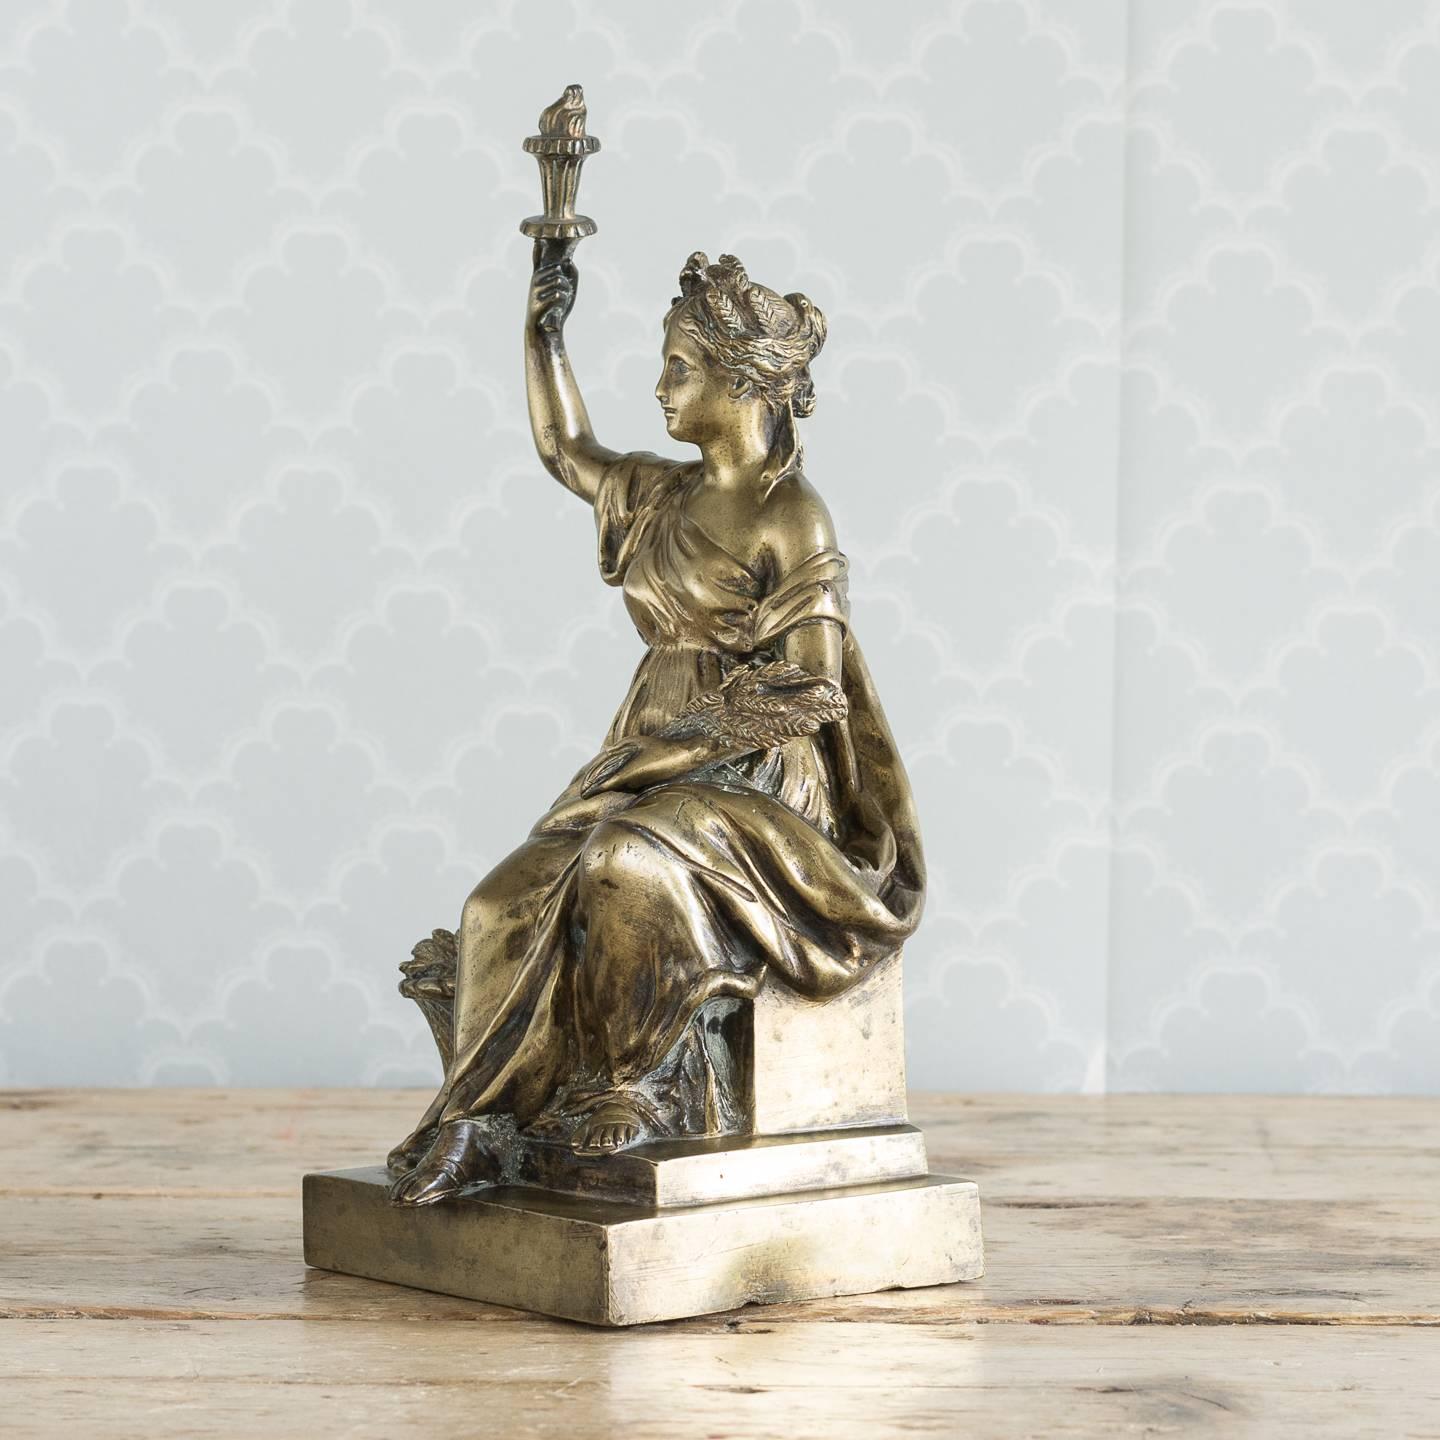 Vergoldetes Bronzemodell von Ceres, römische Göttin des Ackerbaus, sitzend, in der einen Hand eine Fackel haltend, in der anderen eine Weizengarbe haltend, auf Sockel, Italien, 19.

Dieses besondere Modell der Ceres scheint stark von einer